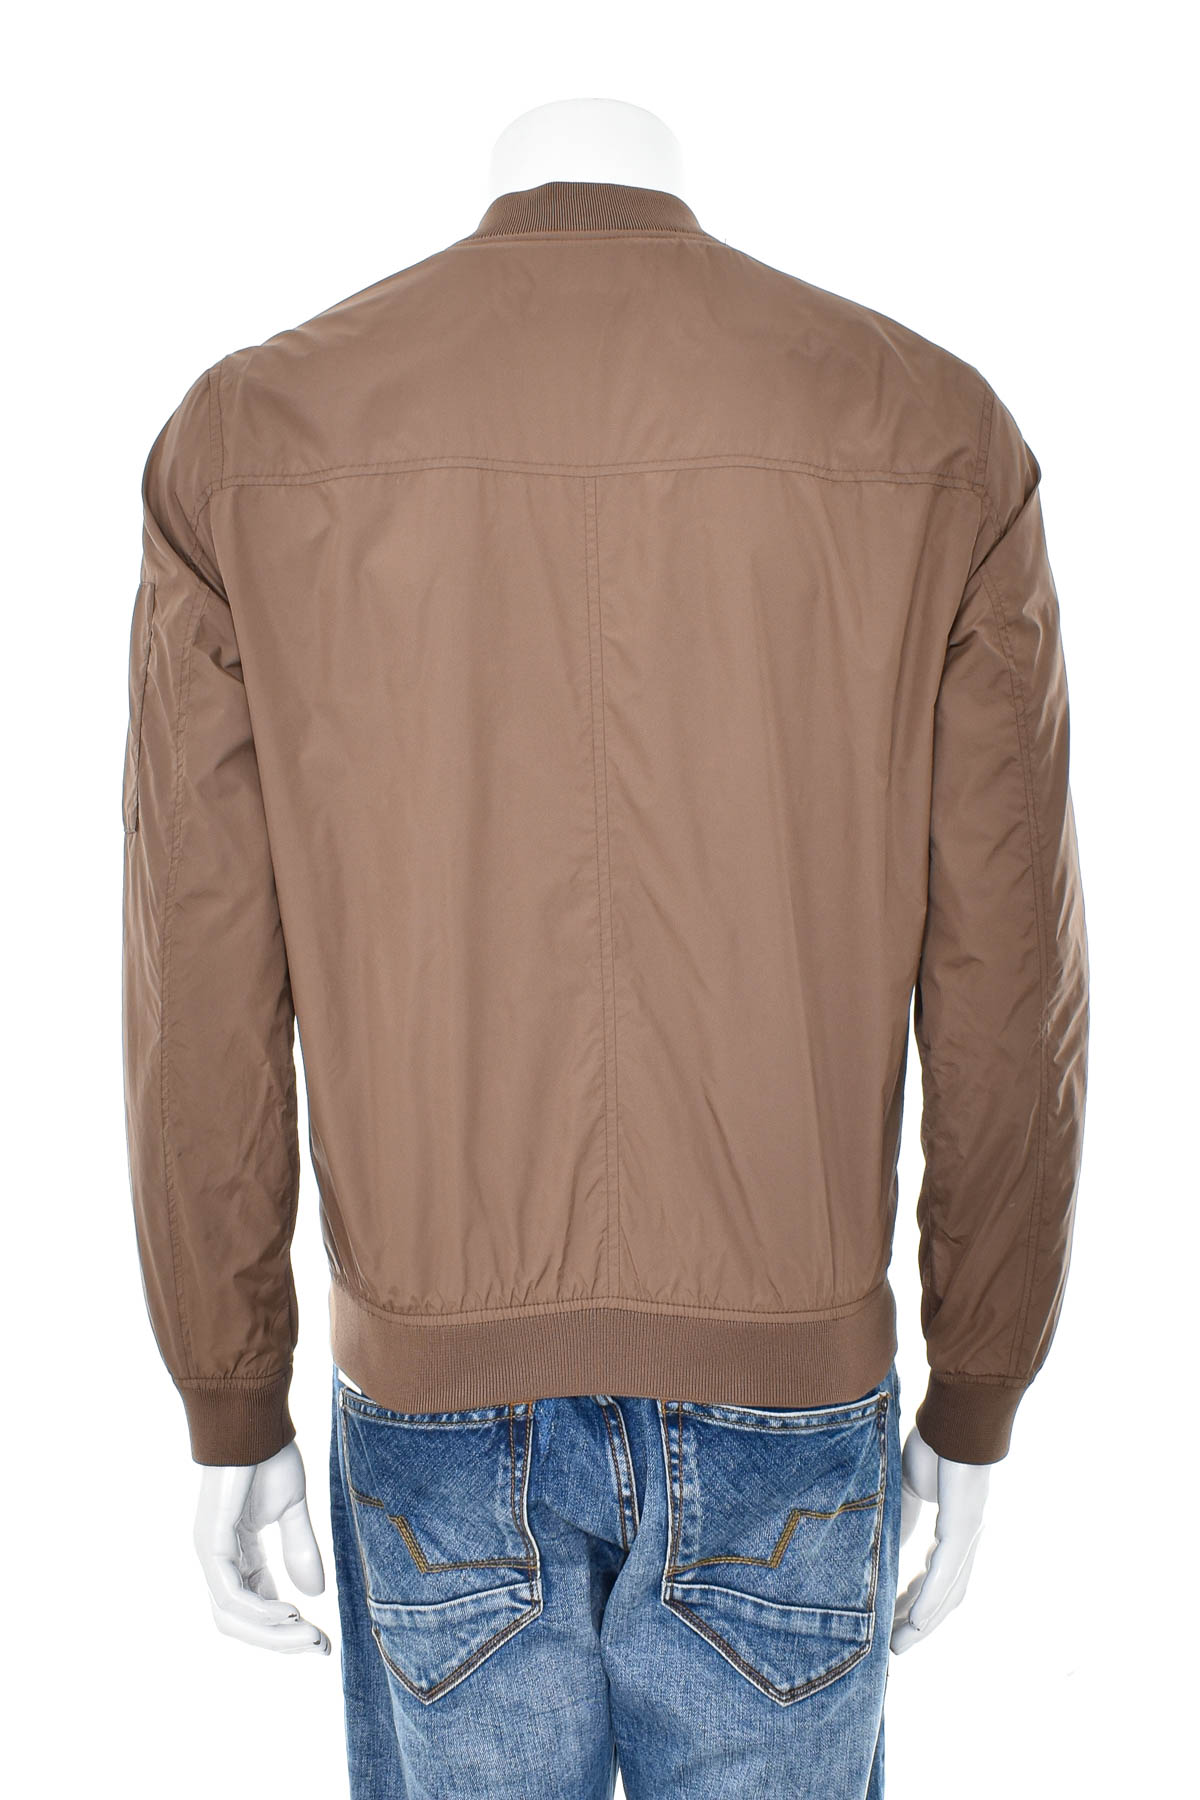 Men's jacket - ESPRIT - 1